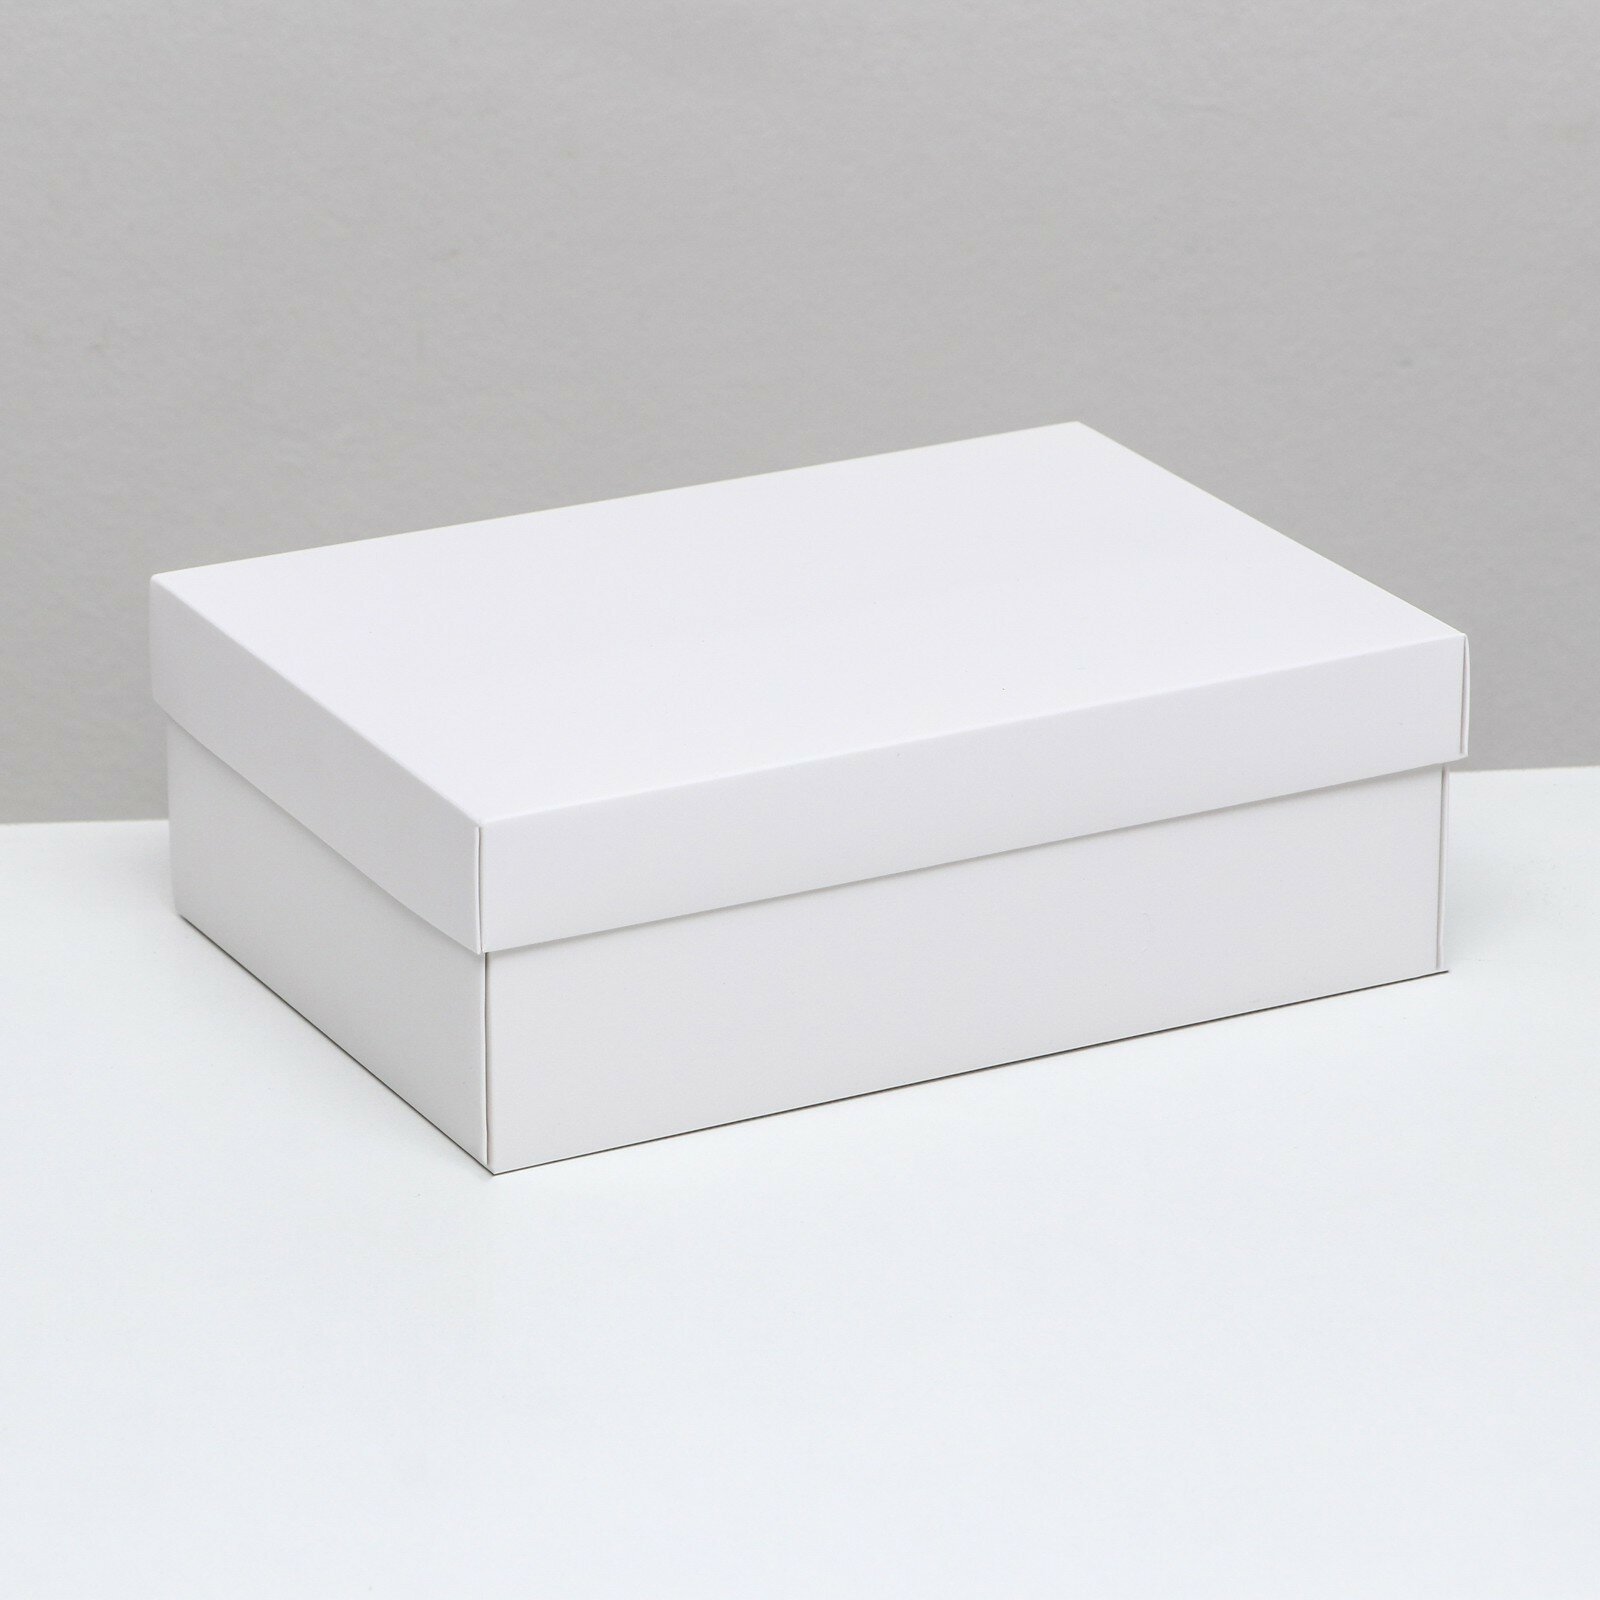 Коробка складная, крышка-дно, белая, 24 х 17 х 8 см (5шт.)